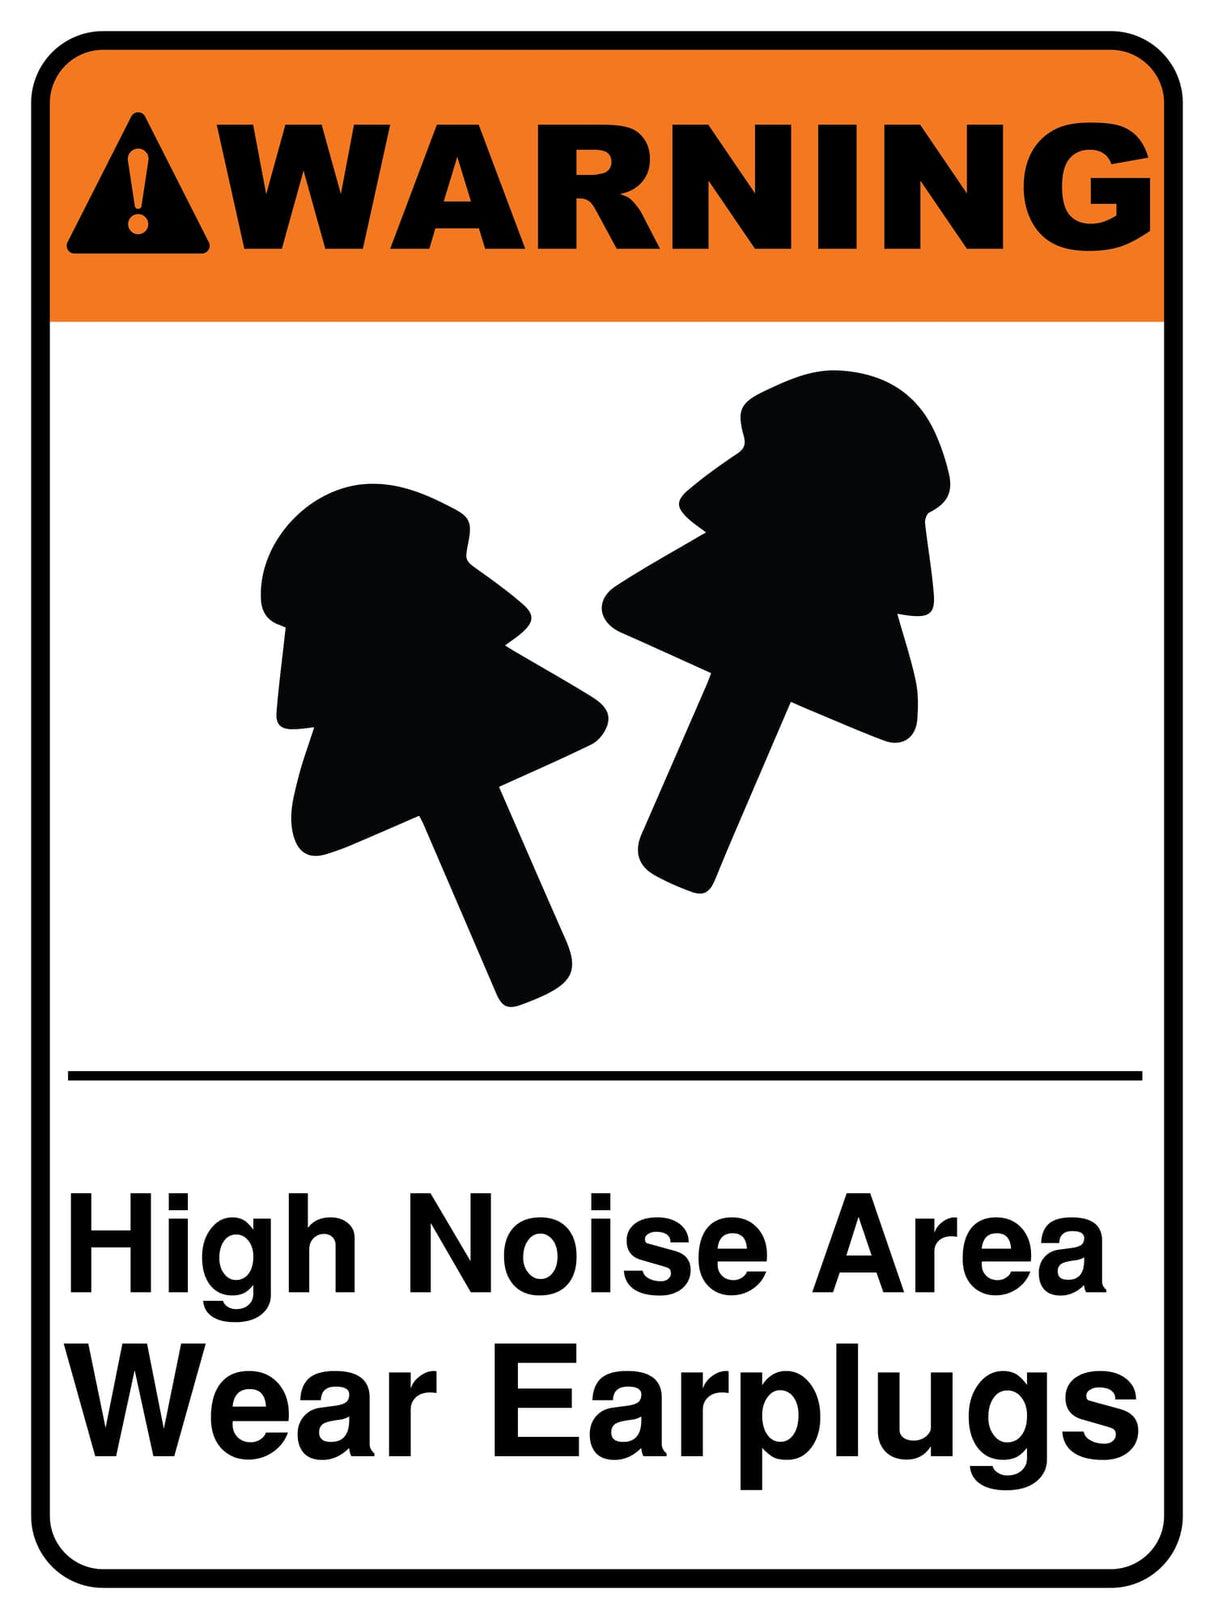 High Noise Area Wear Earplugs